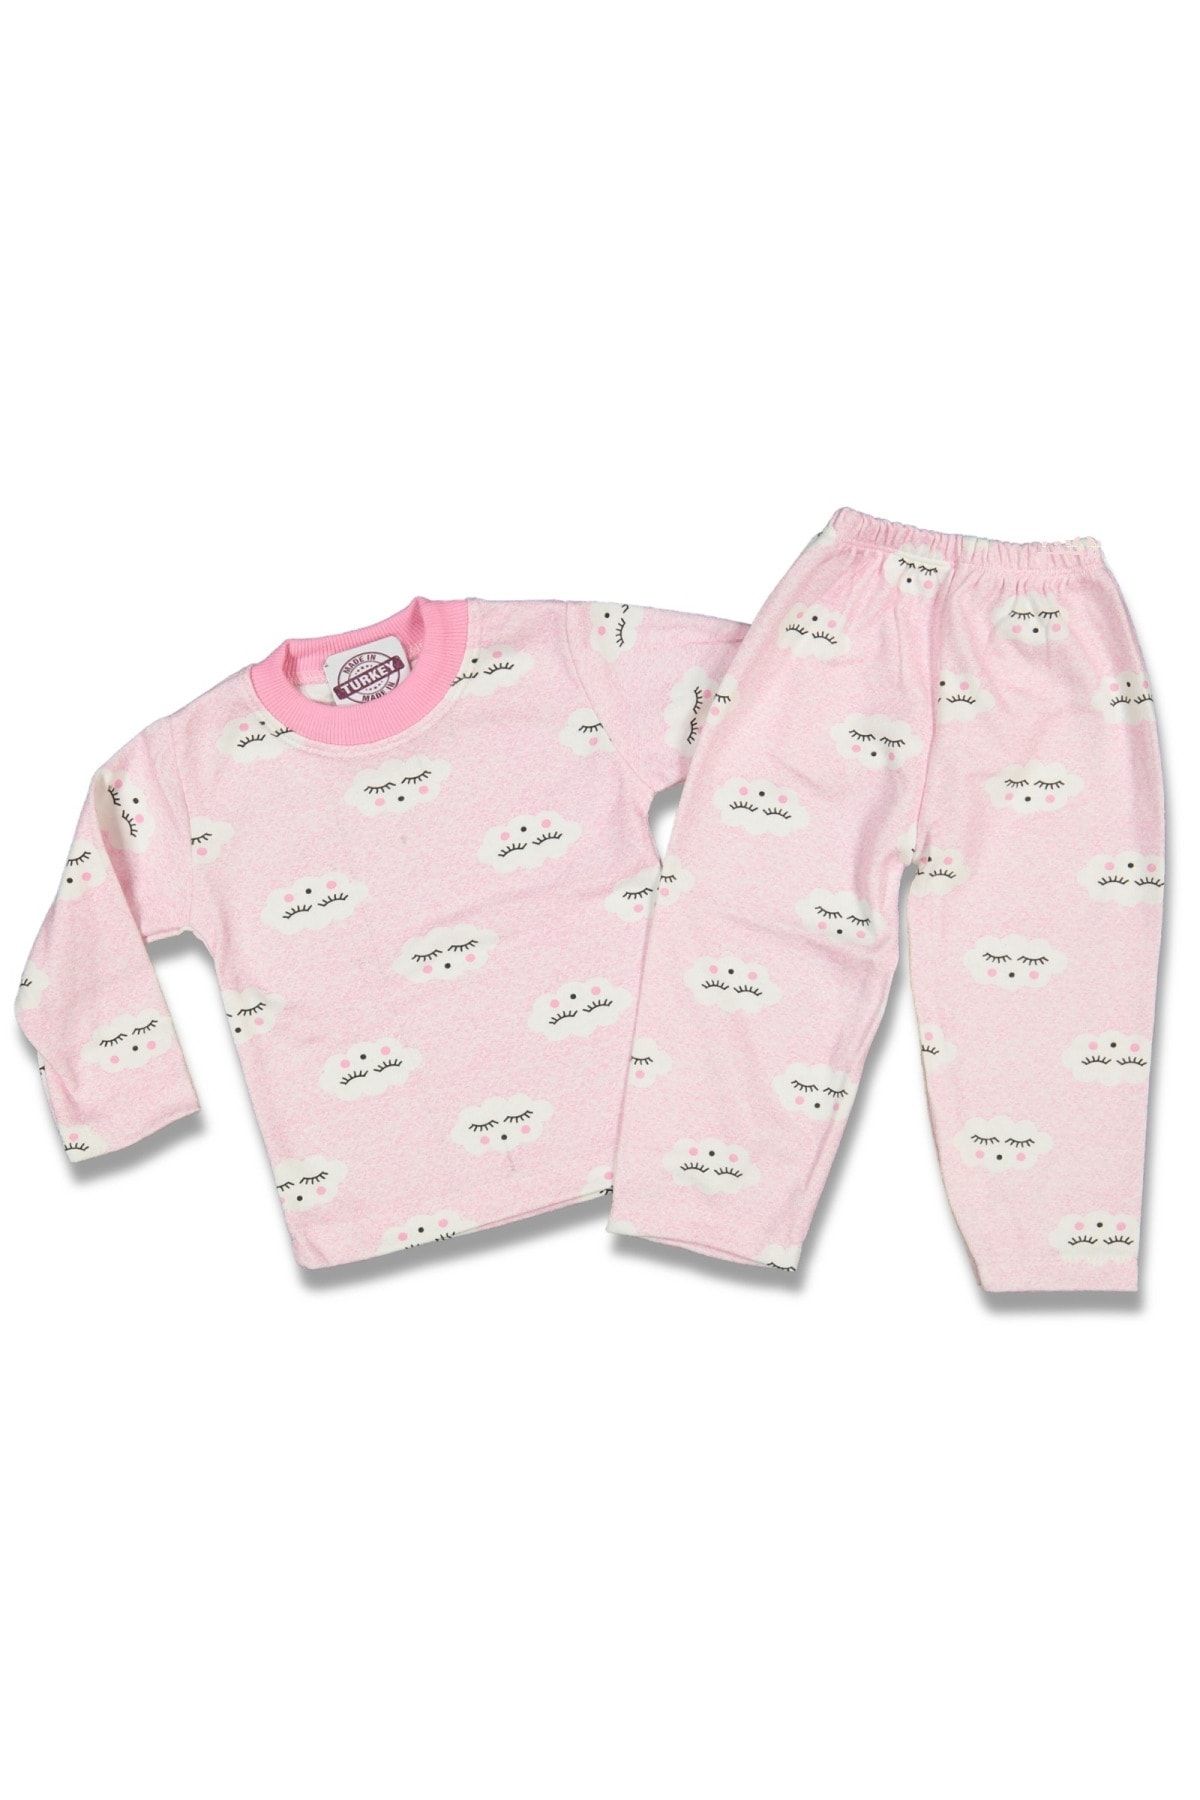 AyCaTa Kız Bebek Bulutlu Pijama Takımı